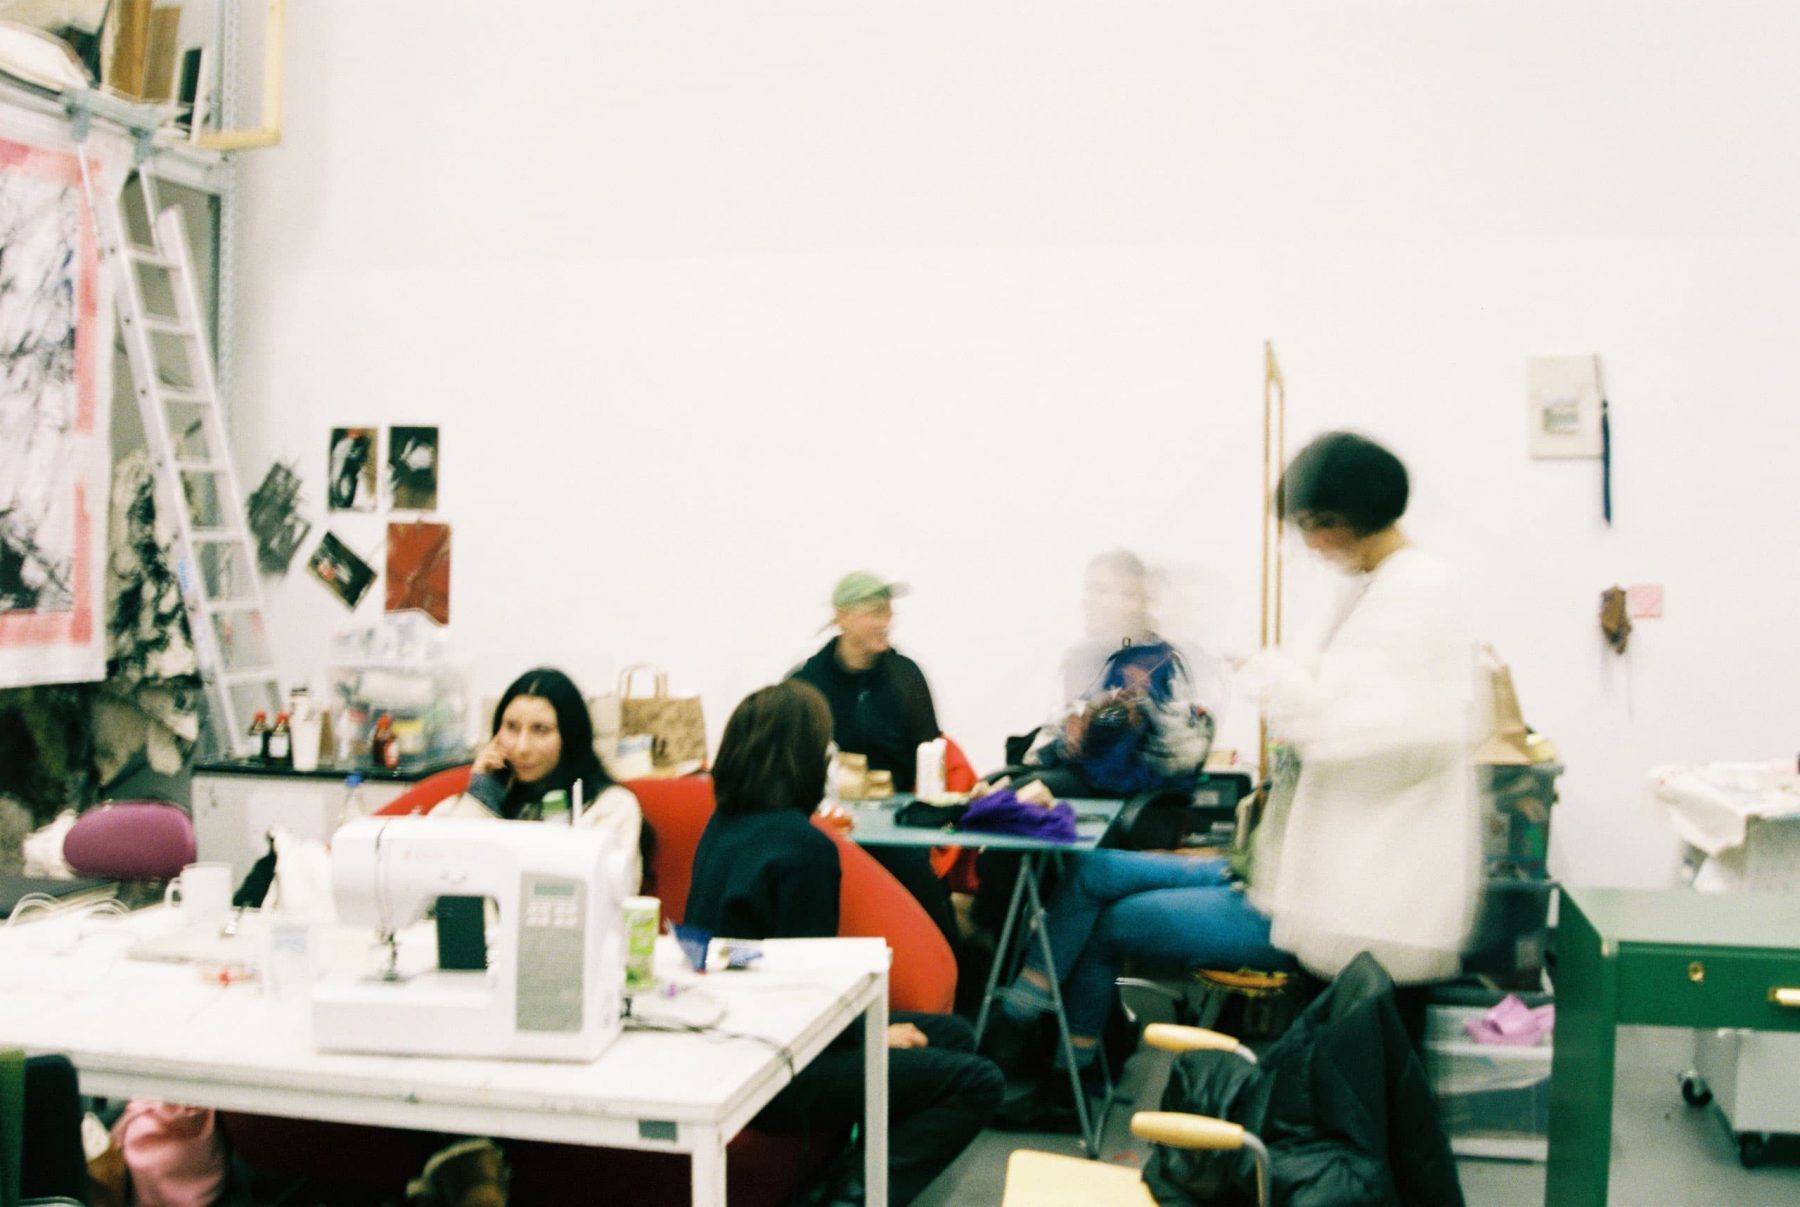 Foto eines Ateliers mit mehren Personen an Tischen, stehend und in Bewegung.